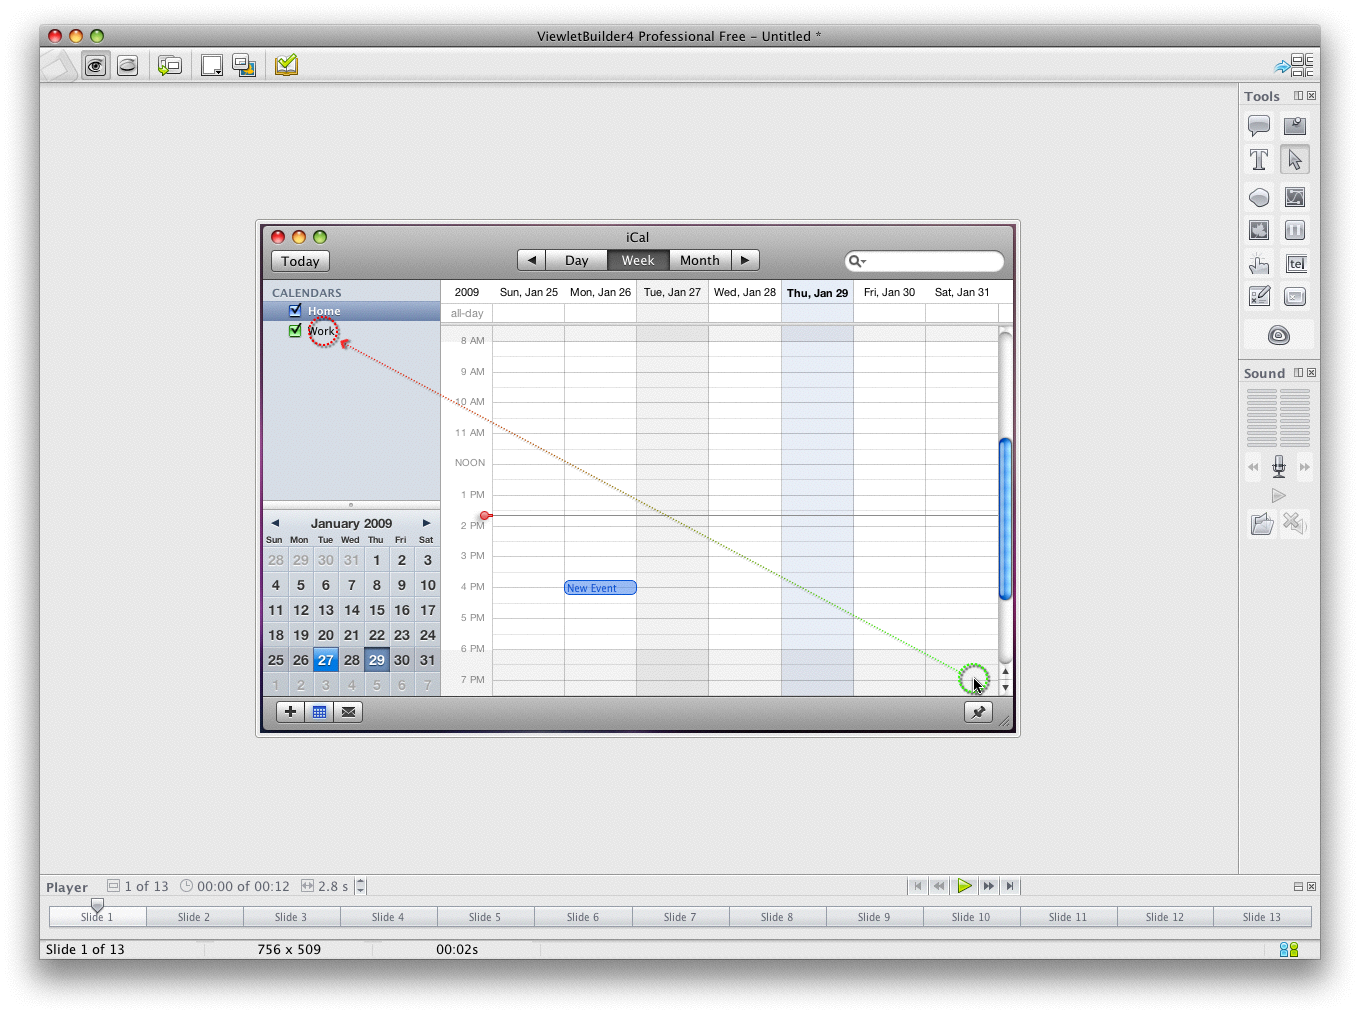 ViewletBuilder 4 Professional (Mac) 4.5.14 software screenshot